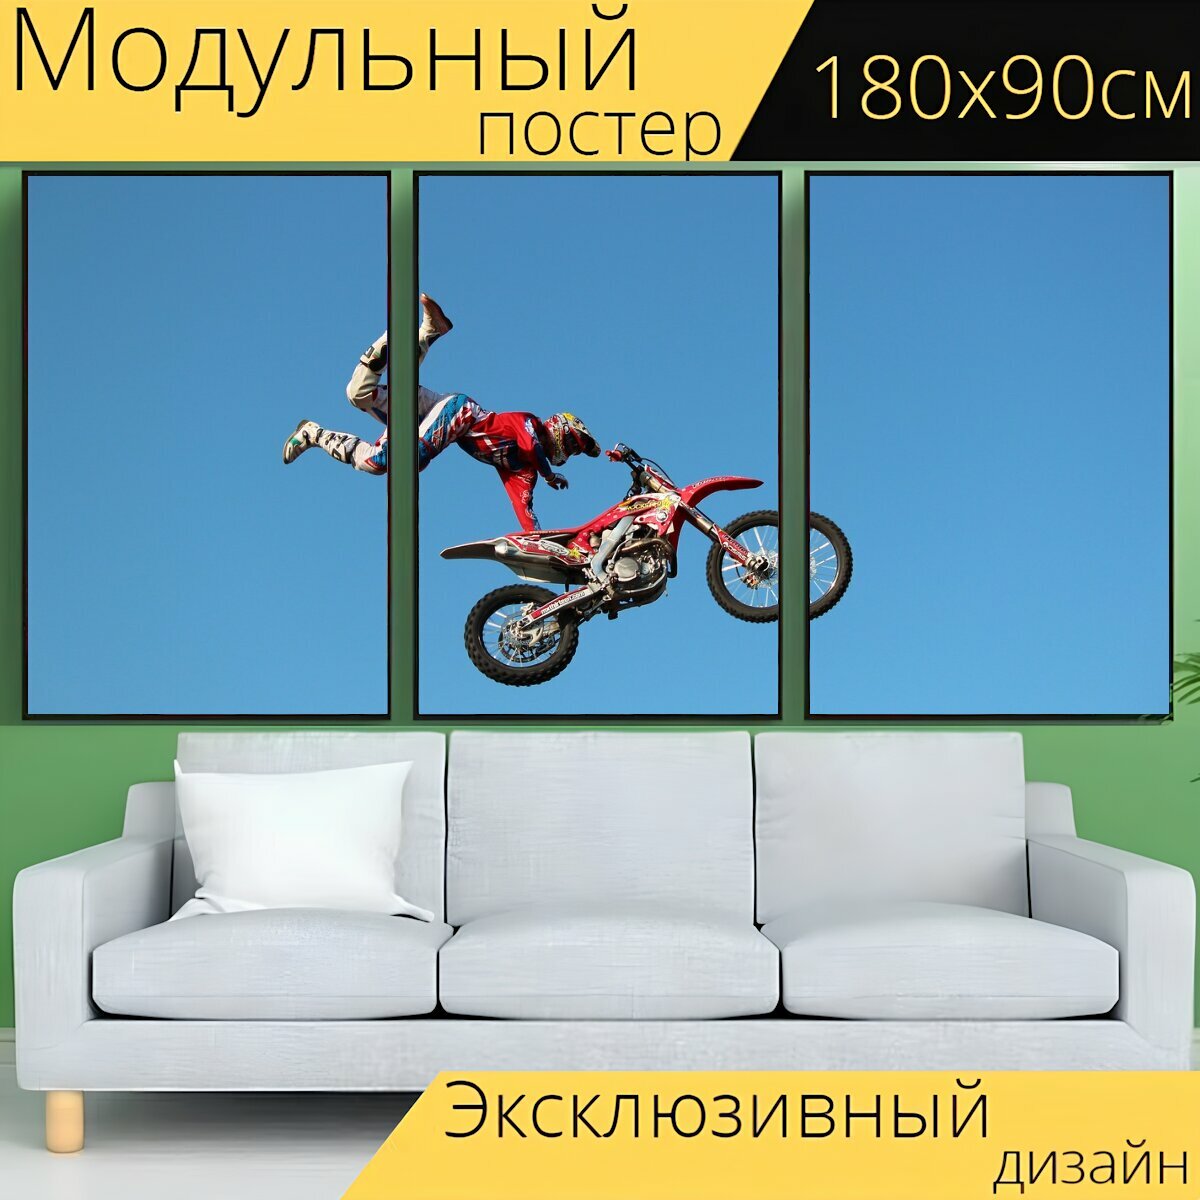 Модульный постер "Мотоцикл, прыгнуть, виды спорта" 180 x 90 см. для интерьера